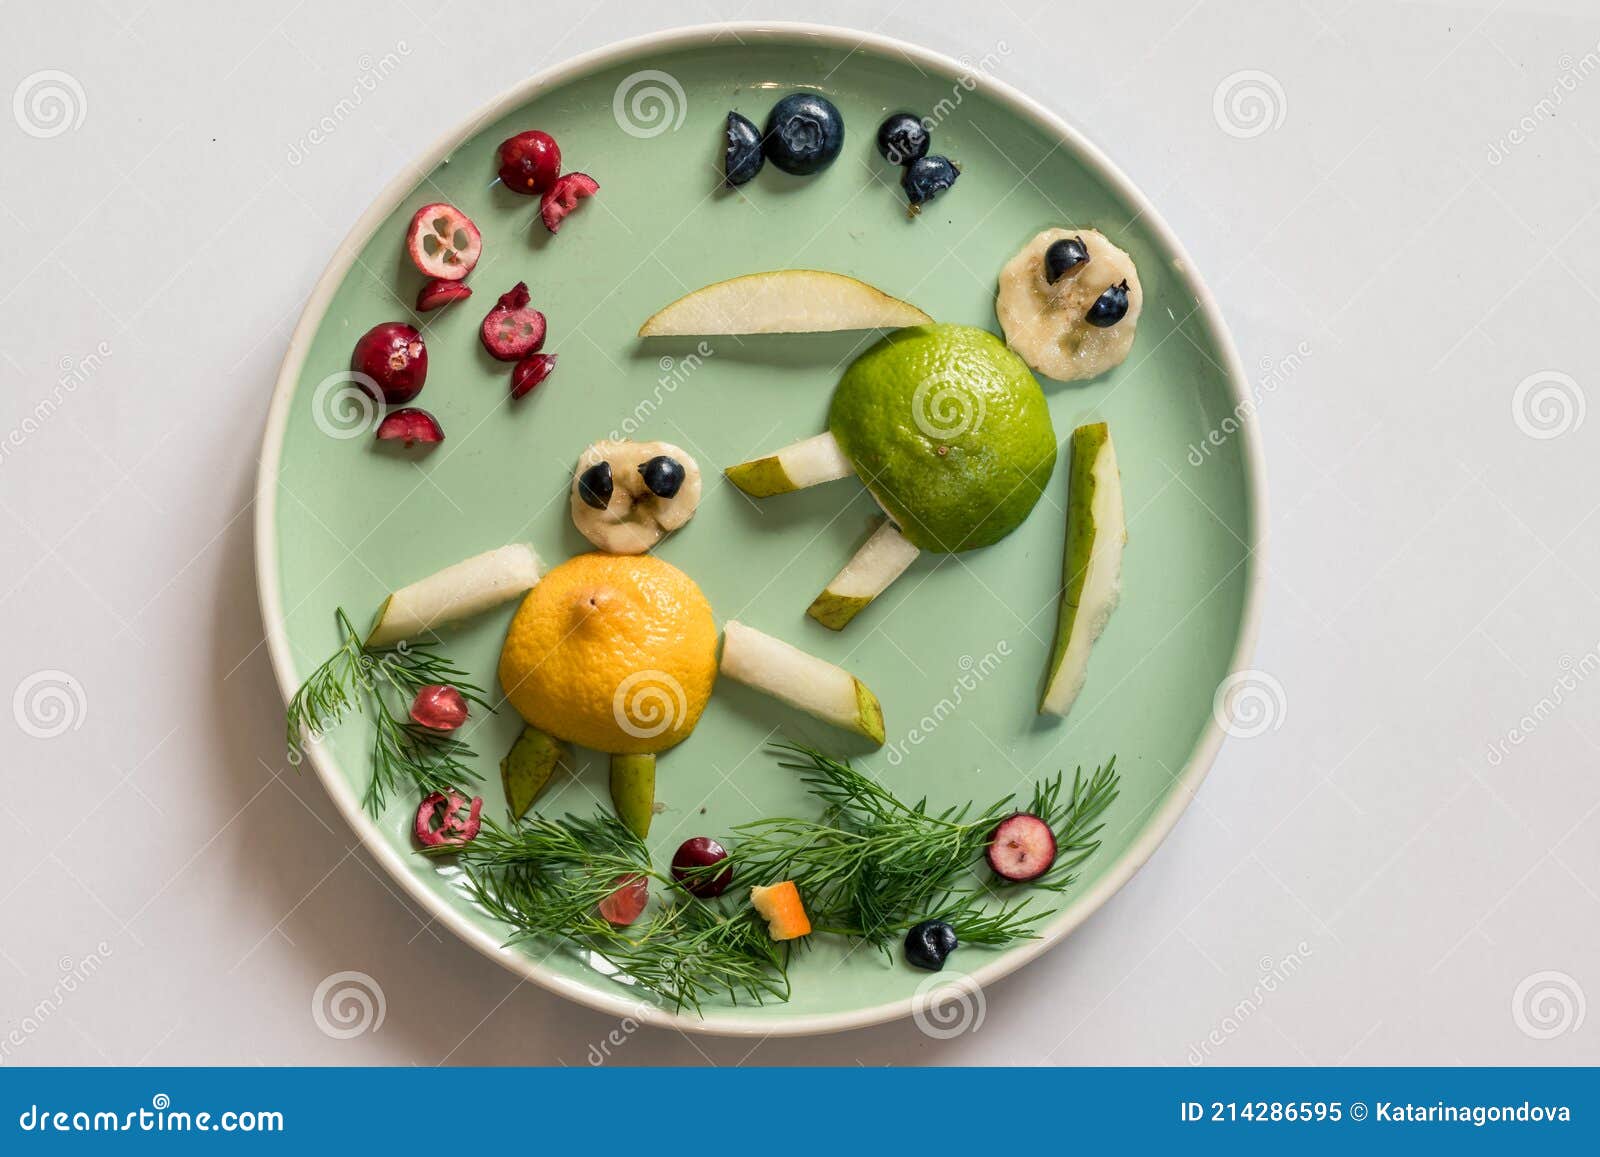 Idées De Repas Créatifs Pour Les Enfants Dans L'assiette Image